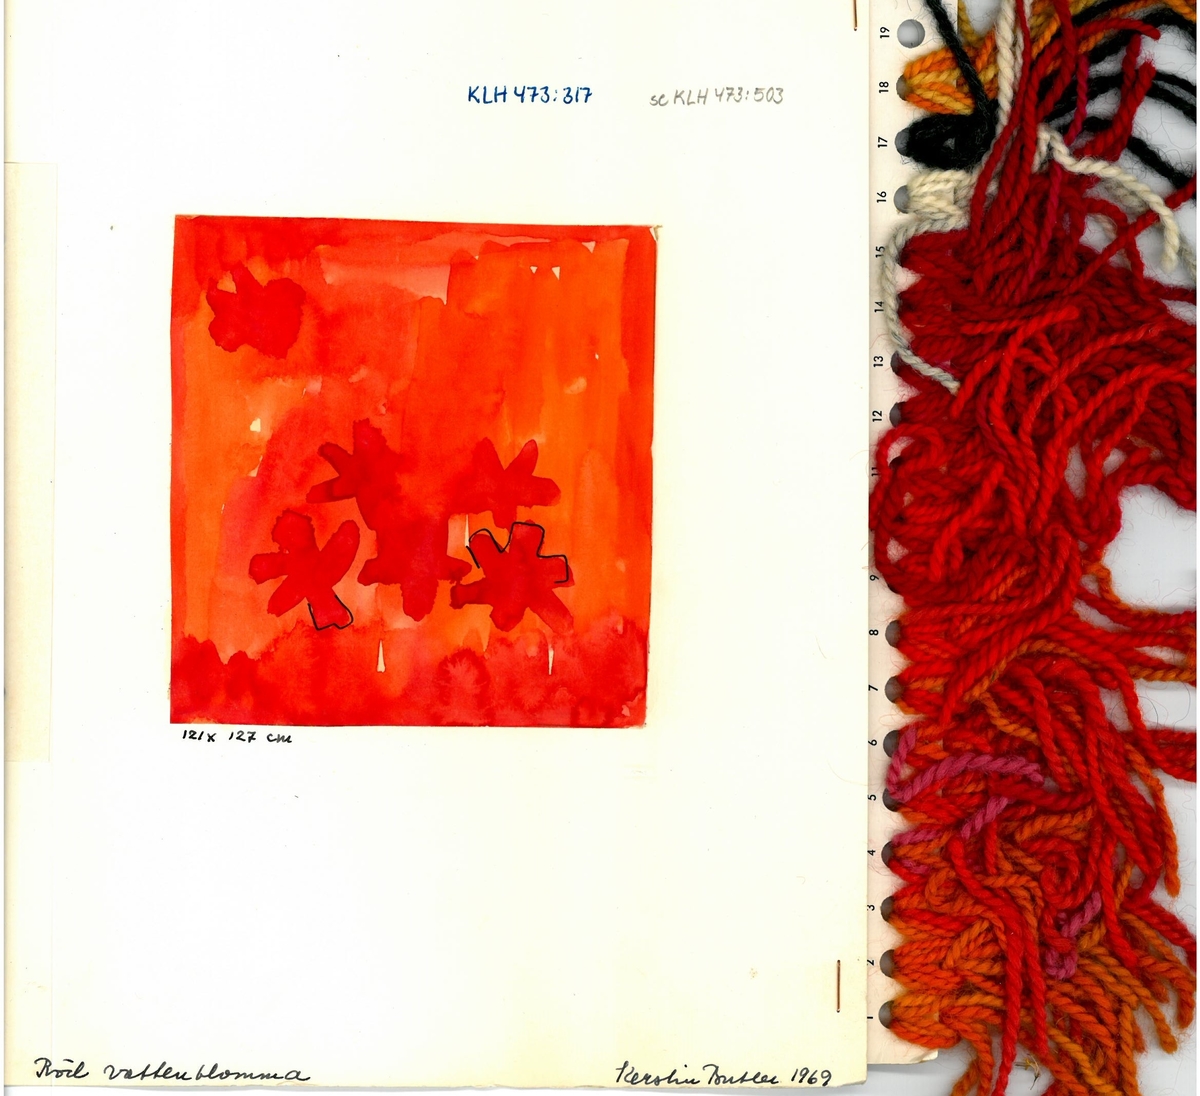 Skiss och garnblandning till flossa- och ryamatta Röd vattenblomma
Formgivning: Kerstin Butler 1969